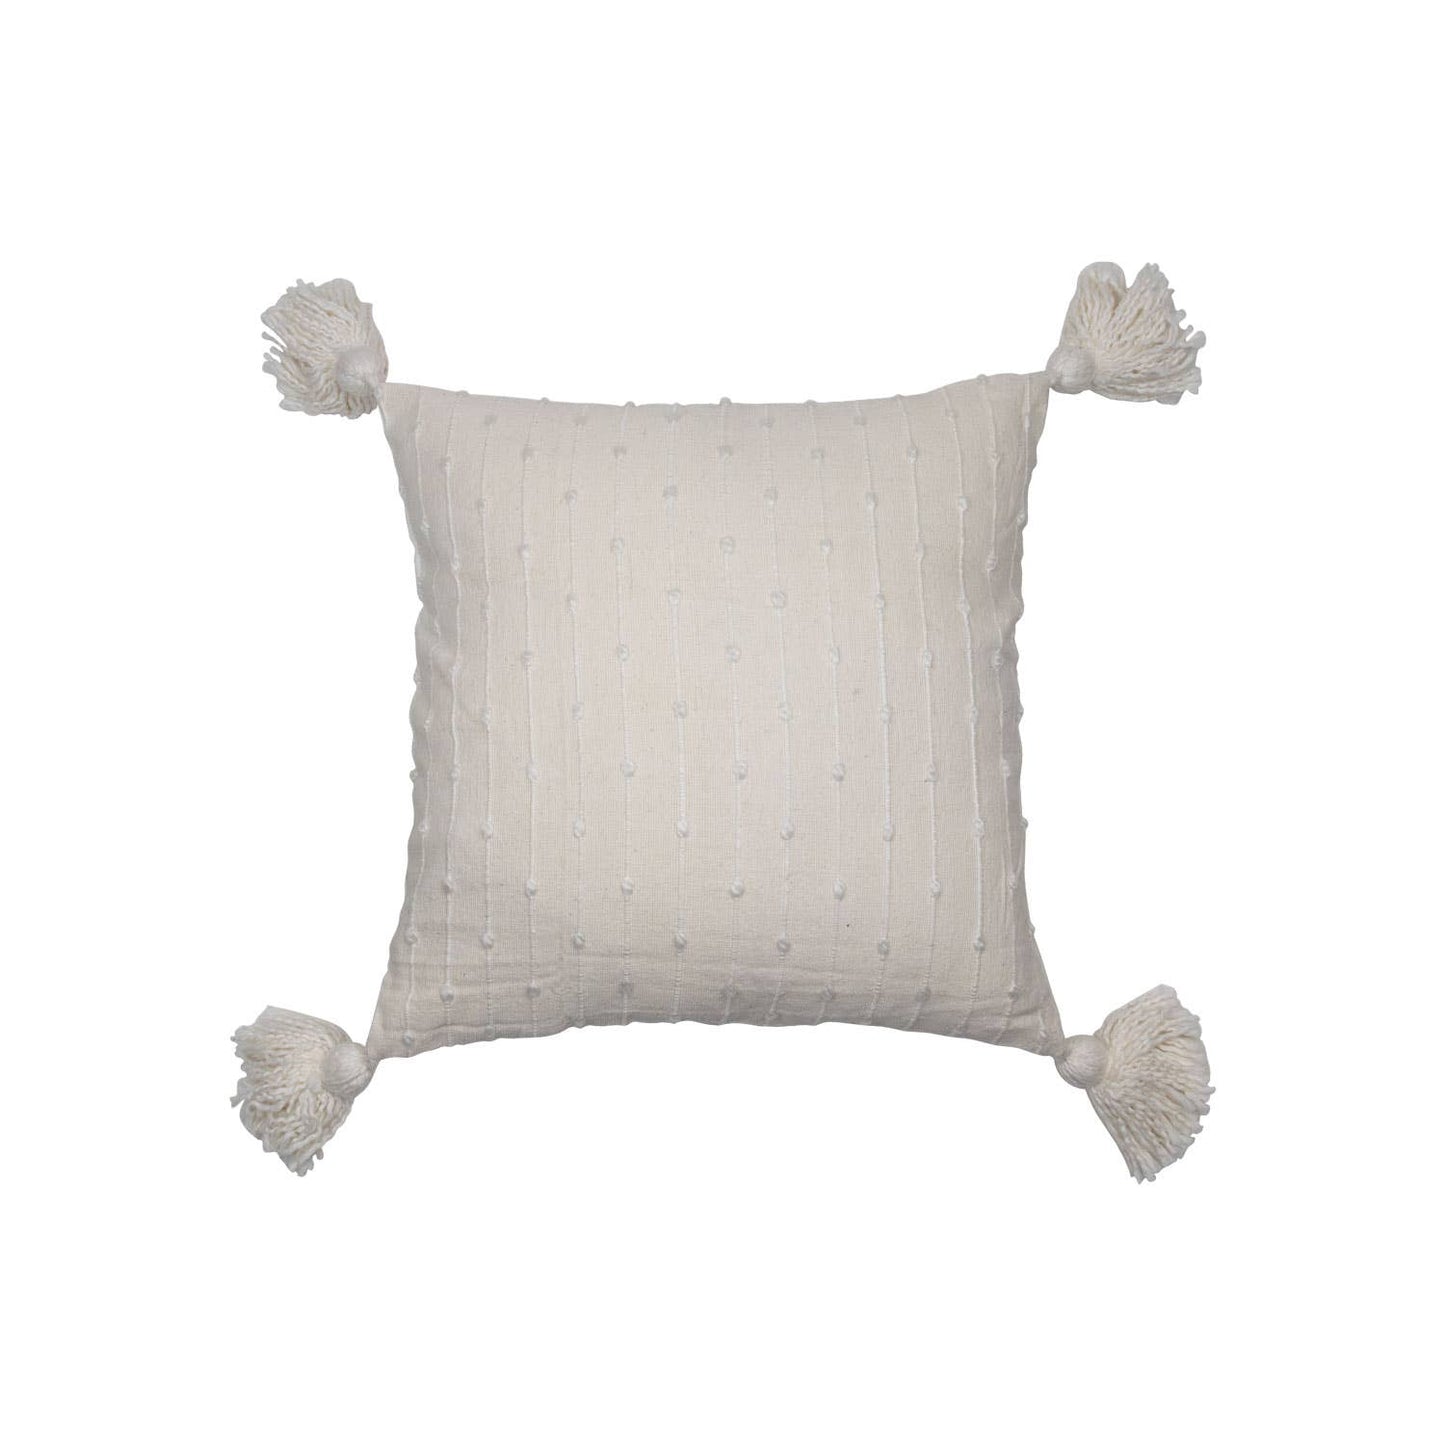 Kira Hand Woven Pillow in White